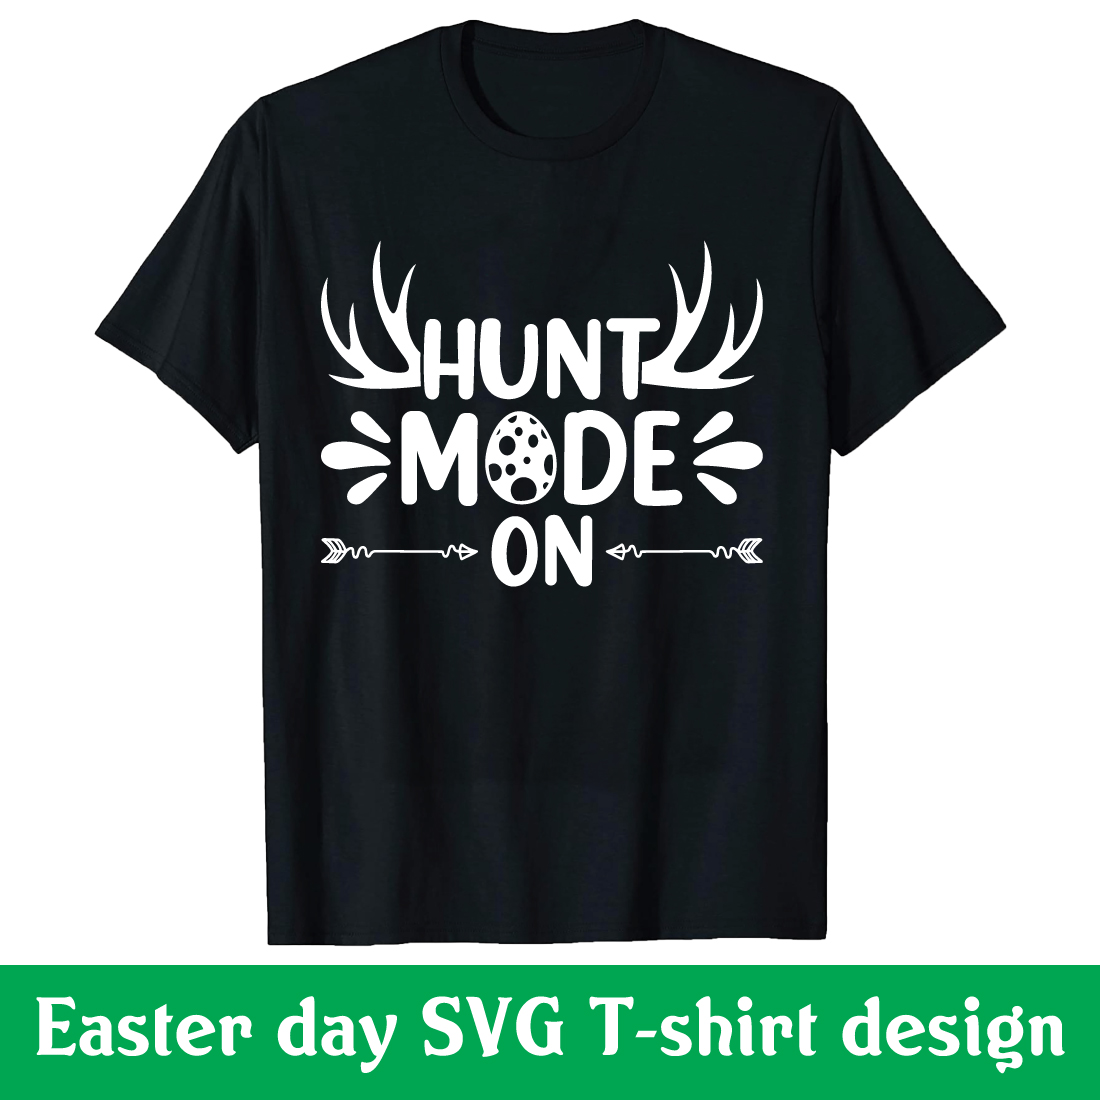 Hunt mode on SVG T-shirt design cover image.